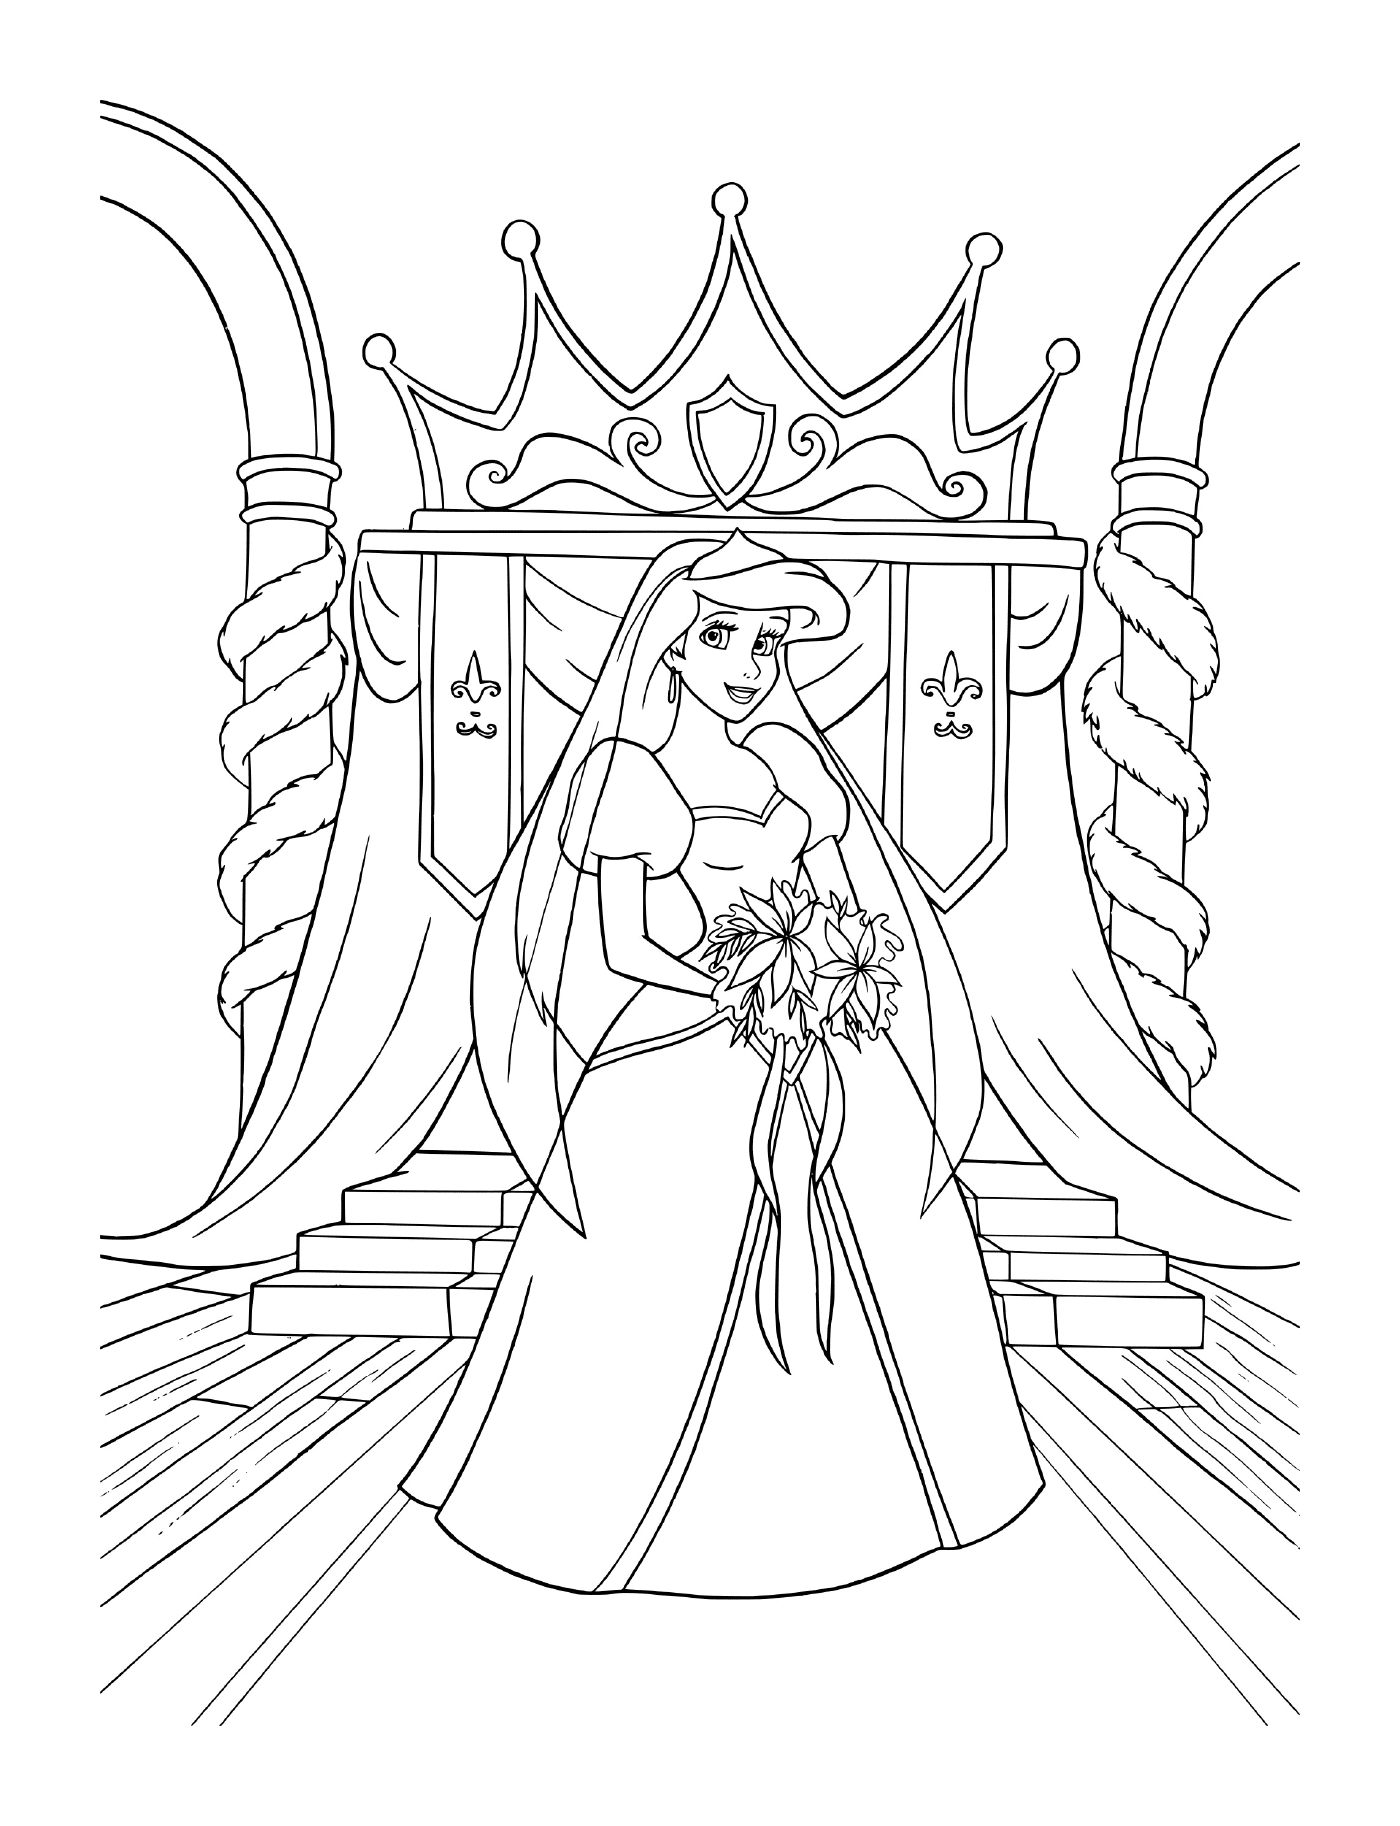  Eine Braut im Hochzeitskleid auf einem Thron sitzend 